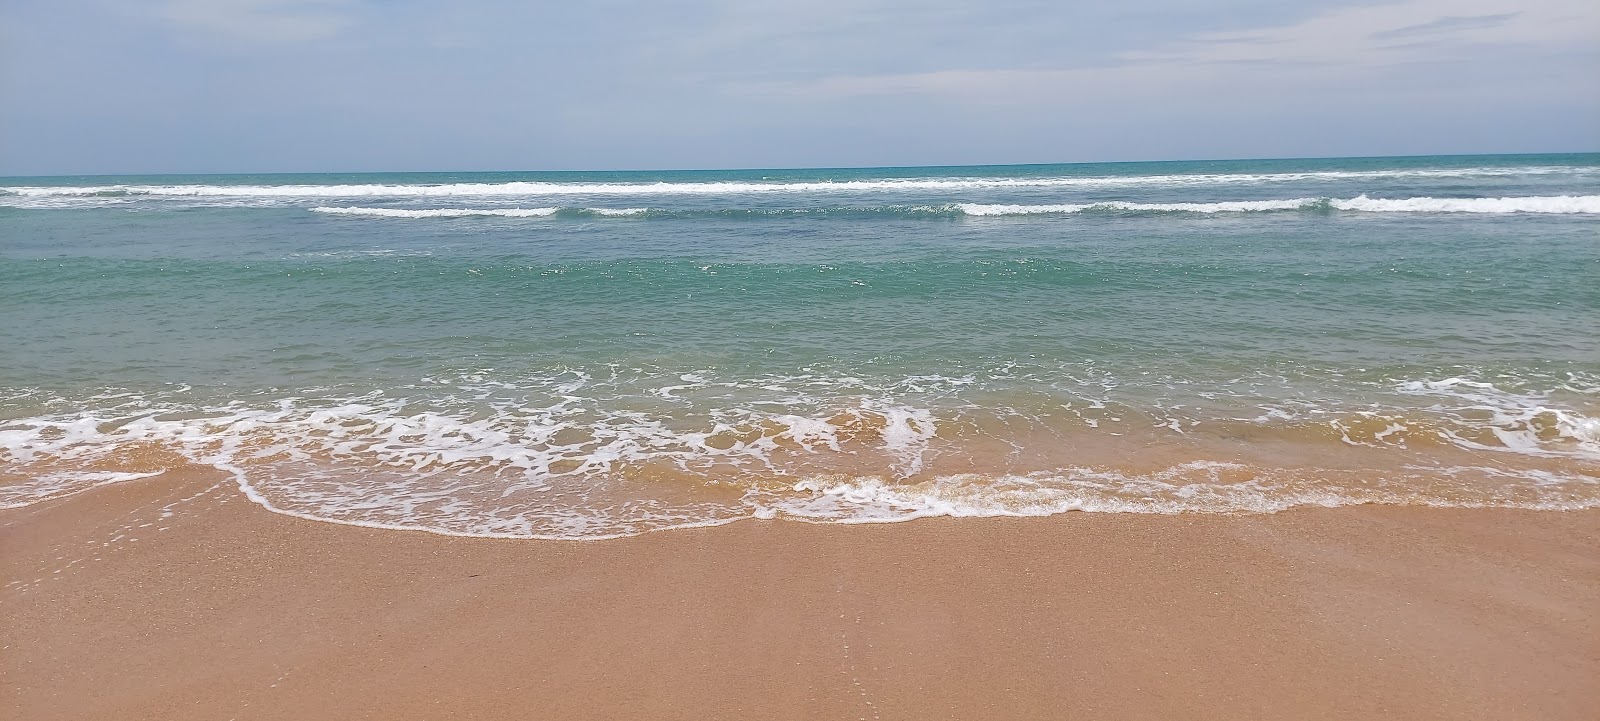 Foto de Kooduthalai beach com água cristalina superfície